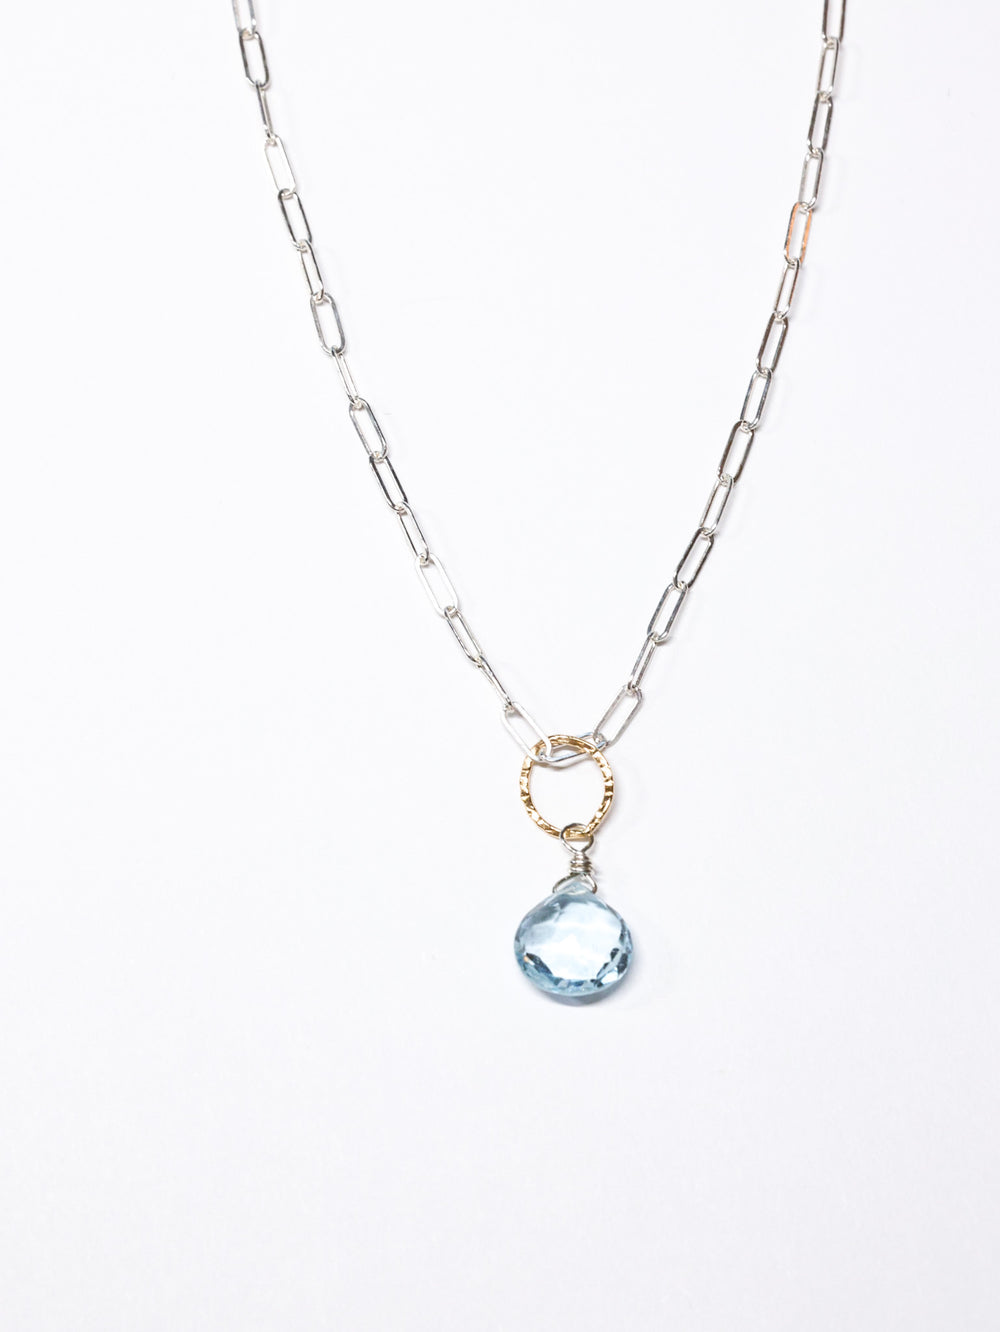 Sky Blue Topaz Pendant Necklace -Sterling Silver